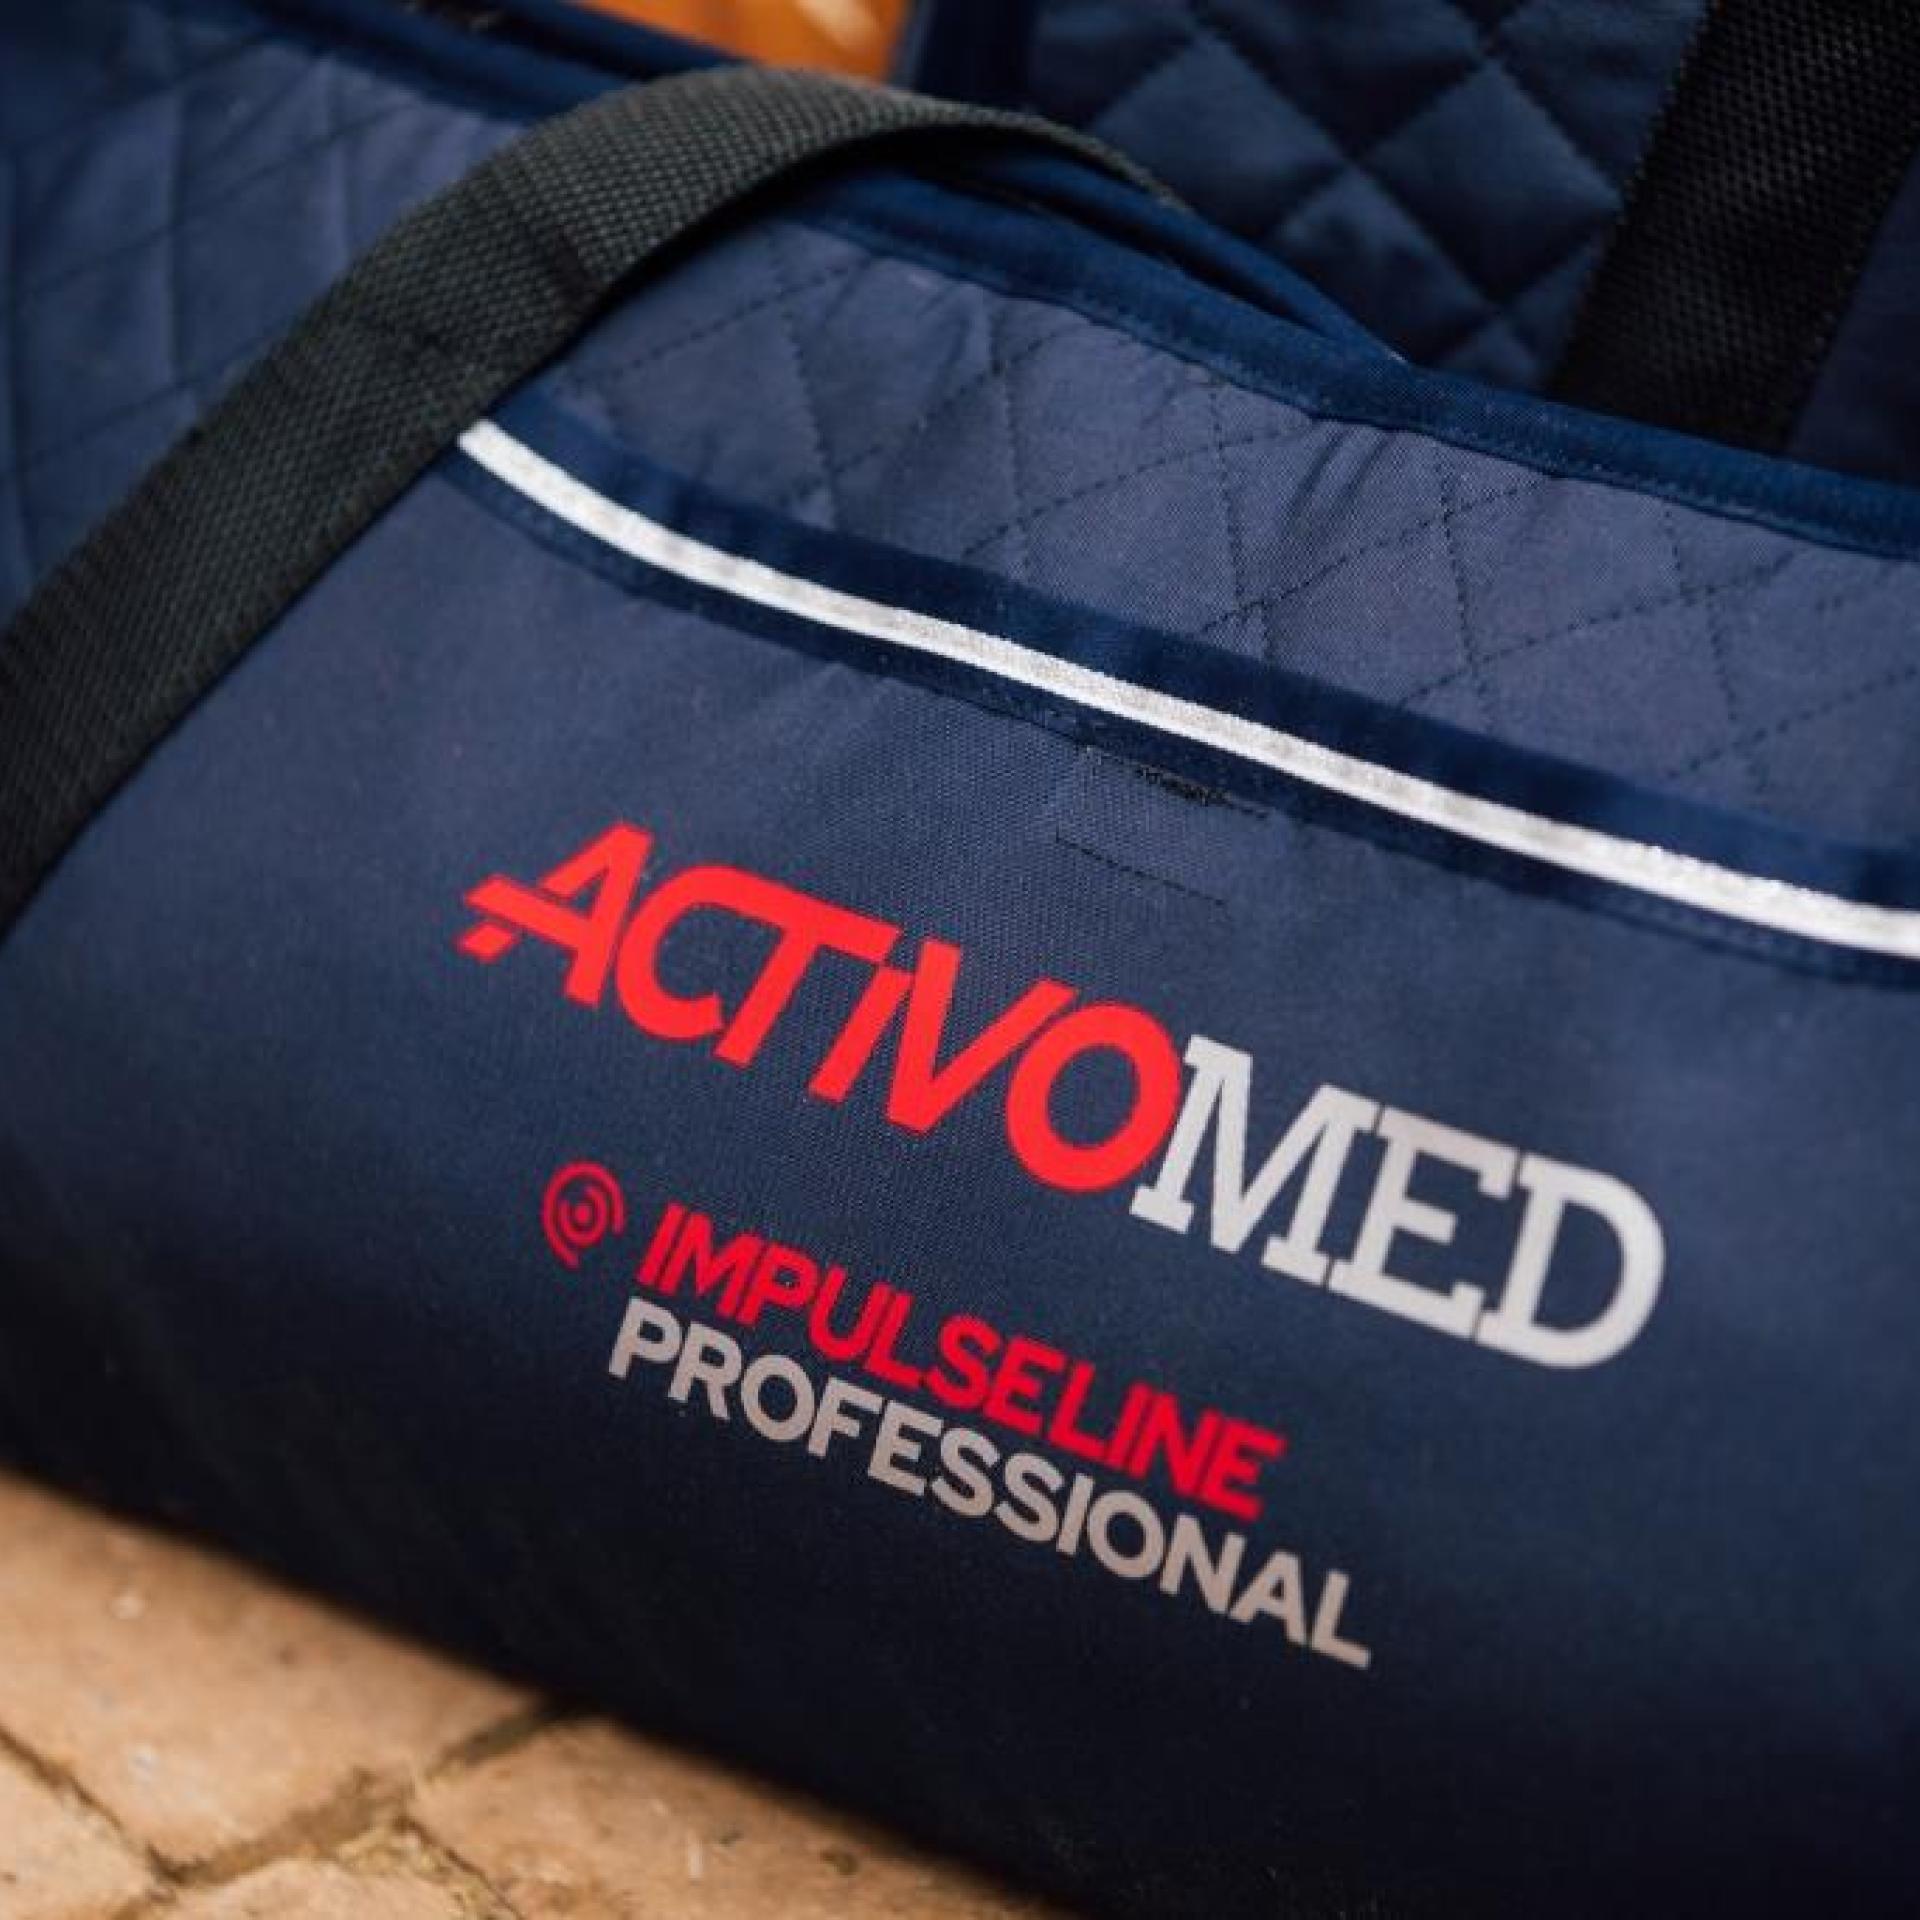 new Activomed Professional PEMF rug - transport bag